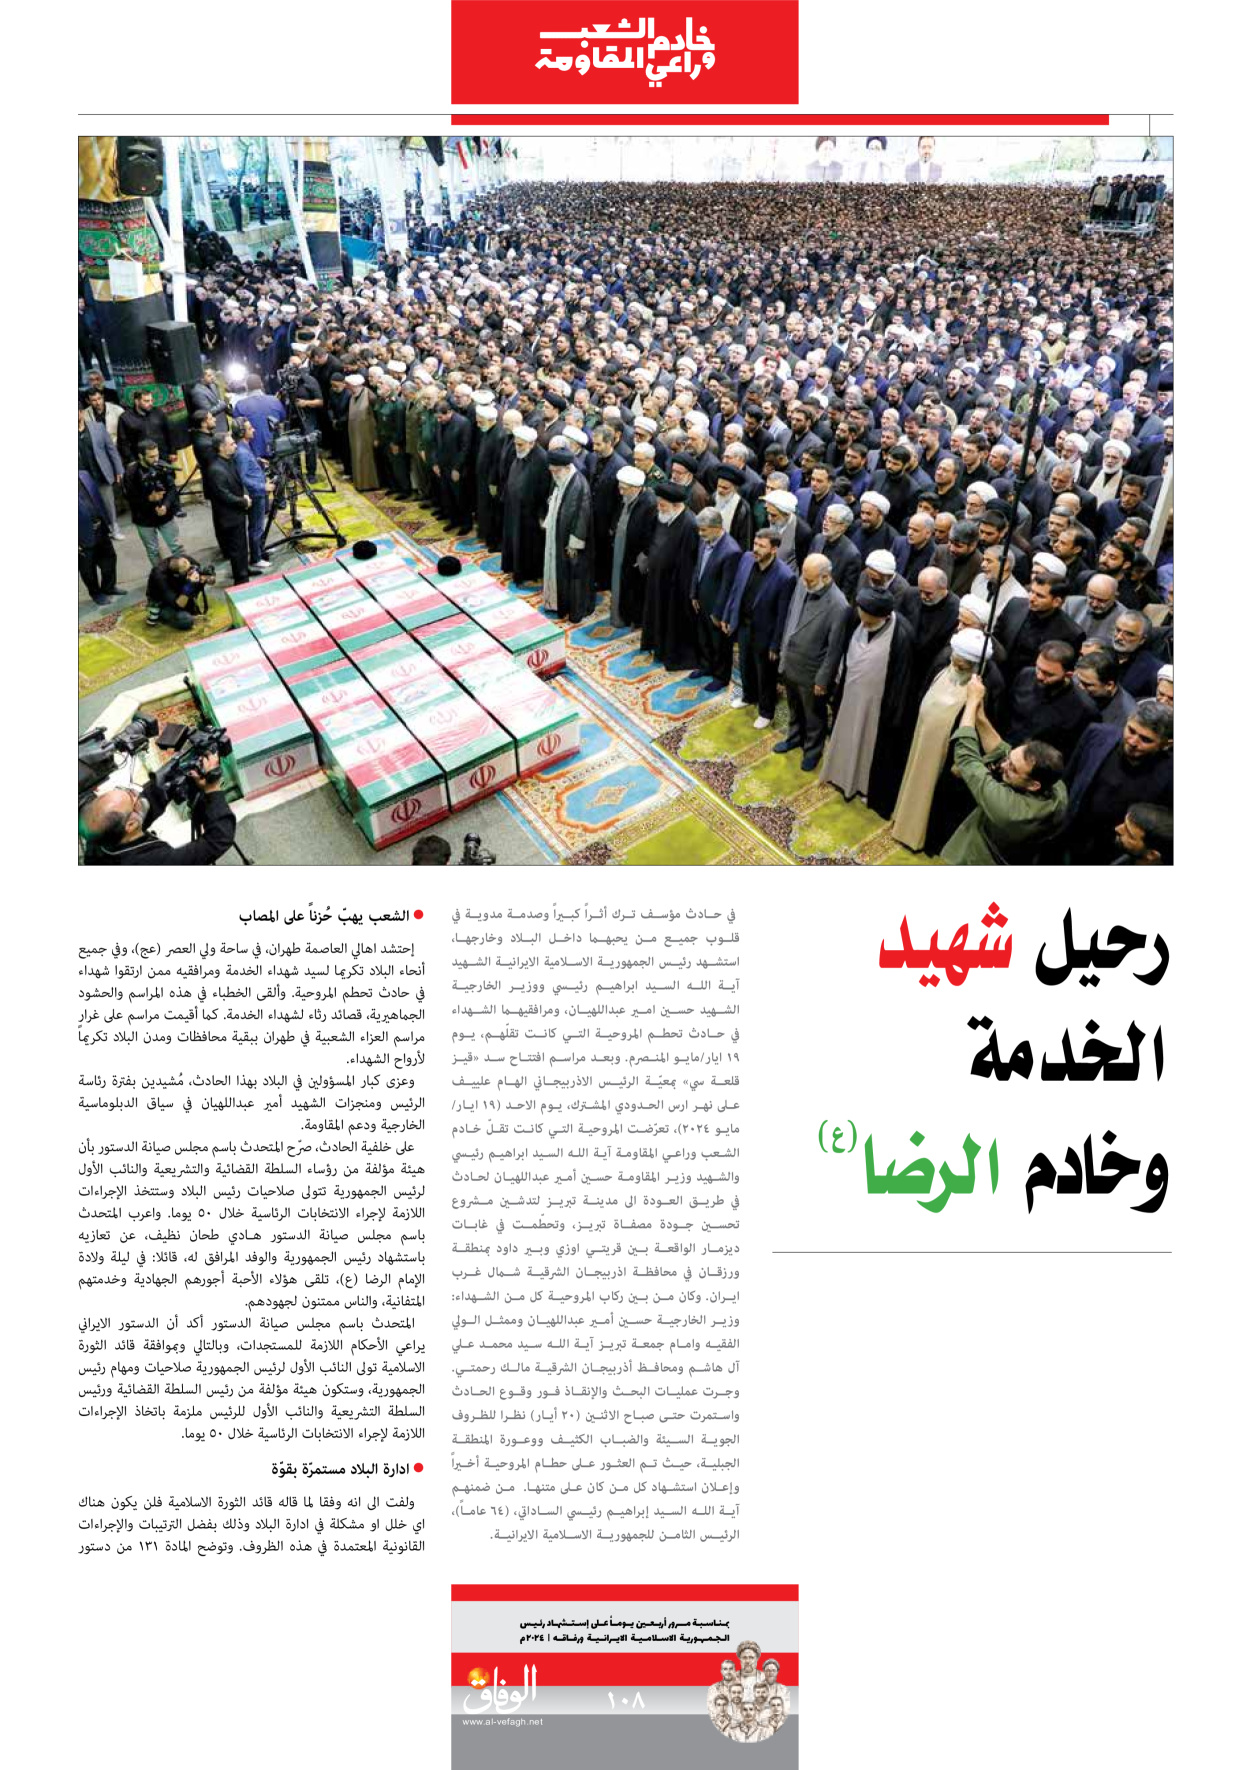 صحیفة ایران الدولیة الوفاق - ملحق ویژه نامه چهلم شهید رییسی - ٢٩ يونيو ٢٠٢٤ - الصفحة ۱۰۷